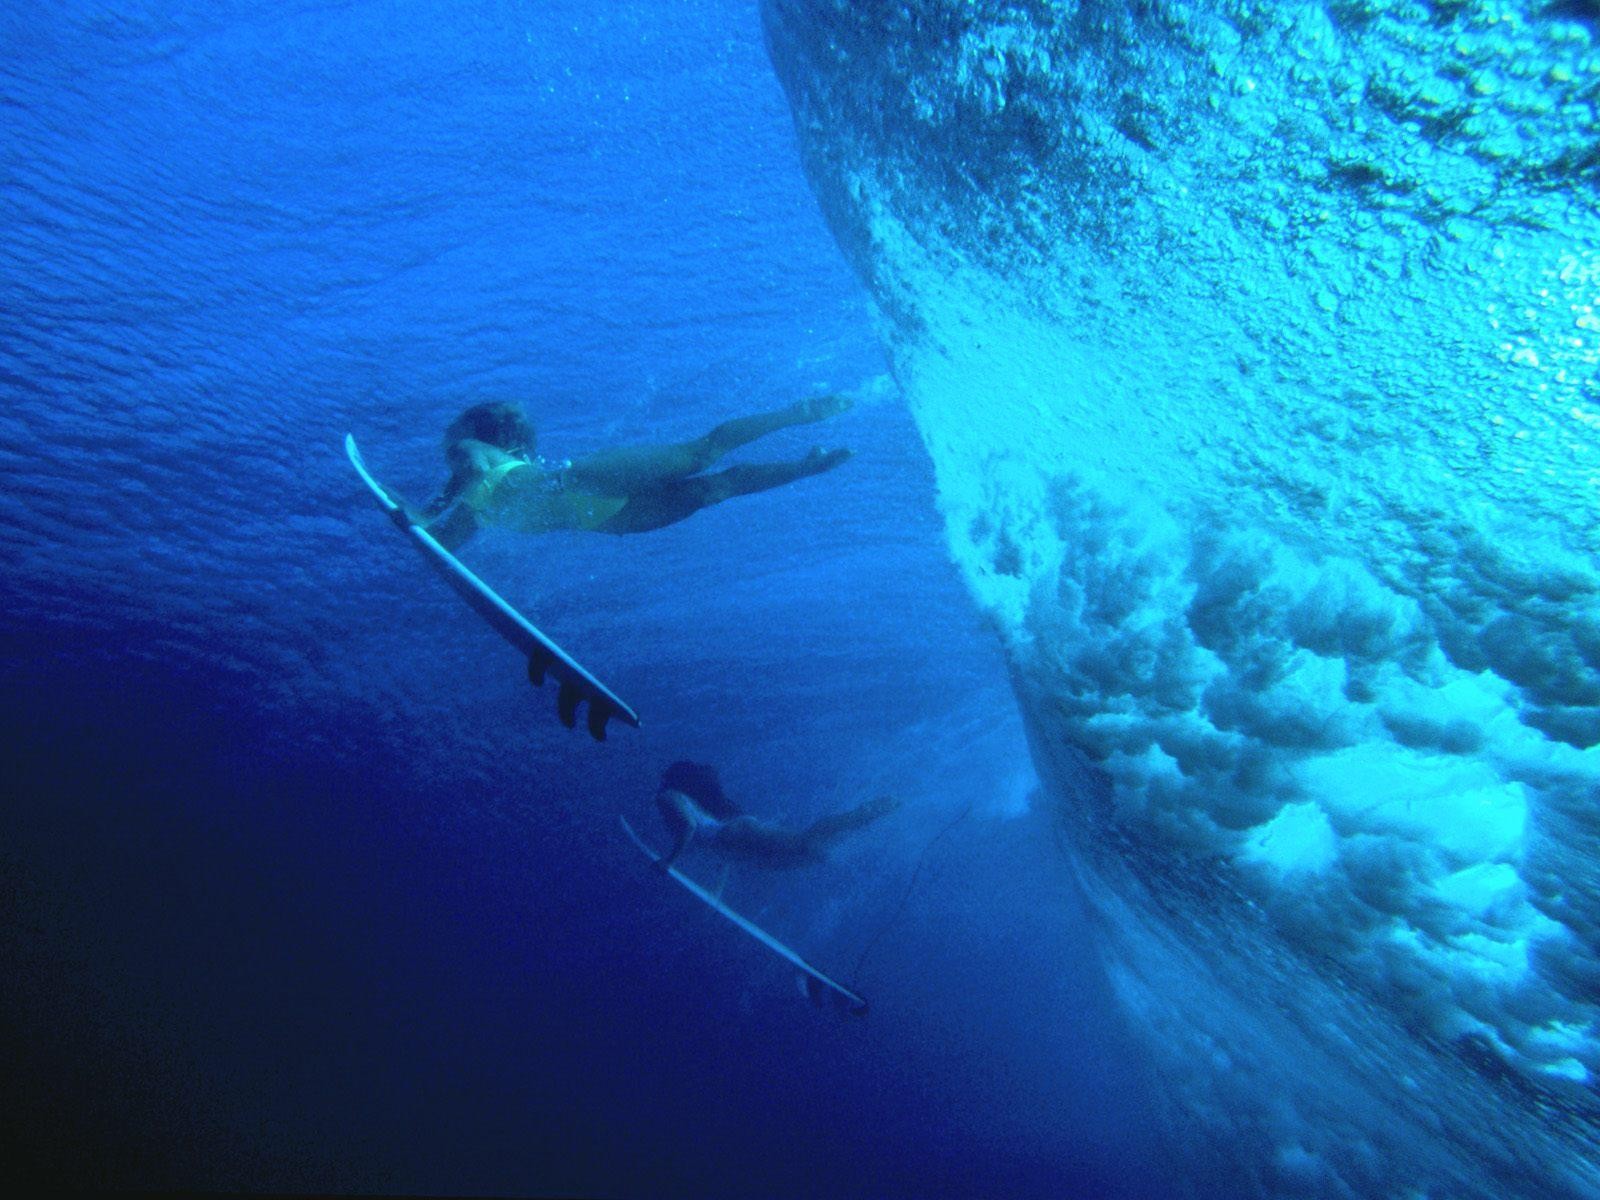 General 1600x1200 surfing women women outdoors underwater sea surfboards surfers blue outdoors